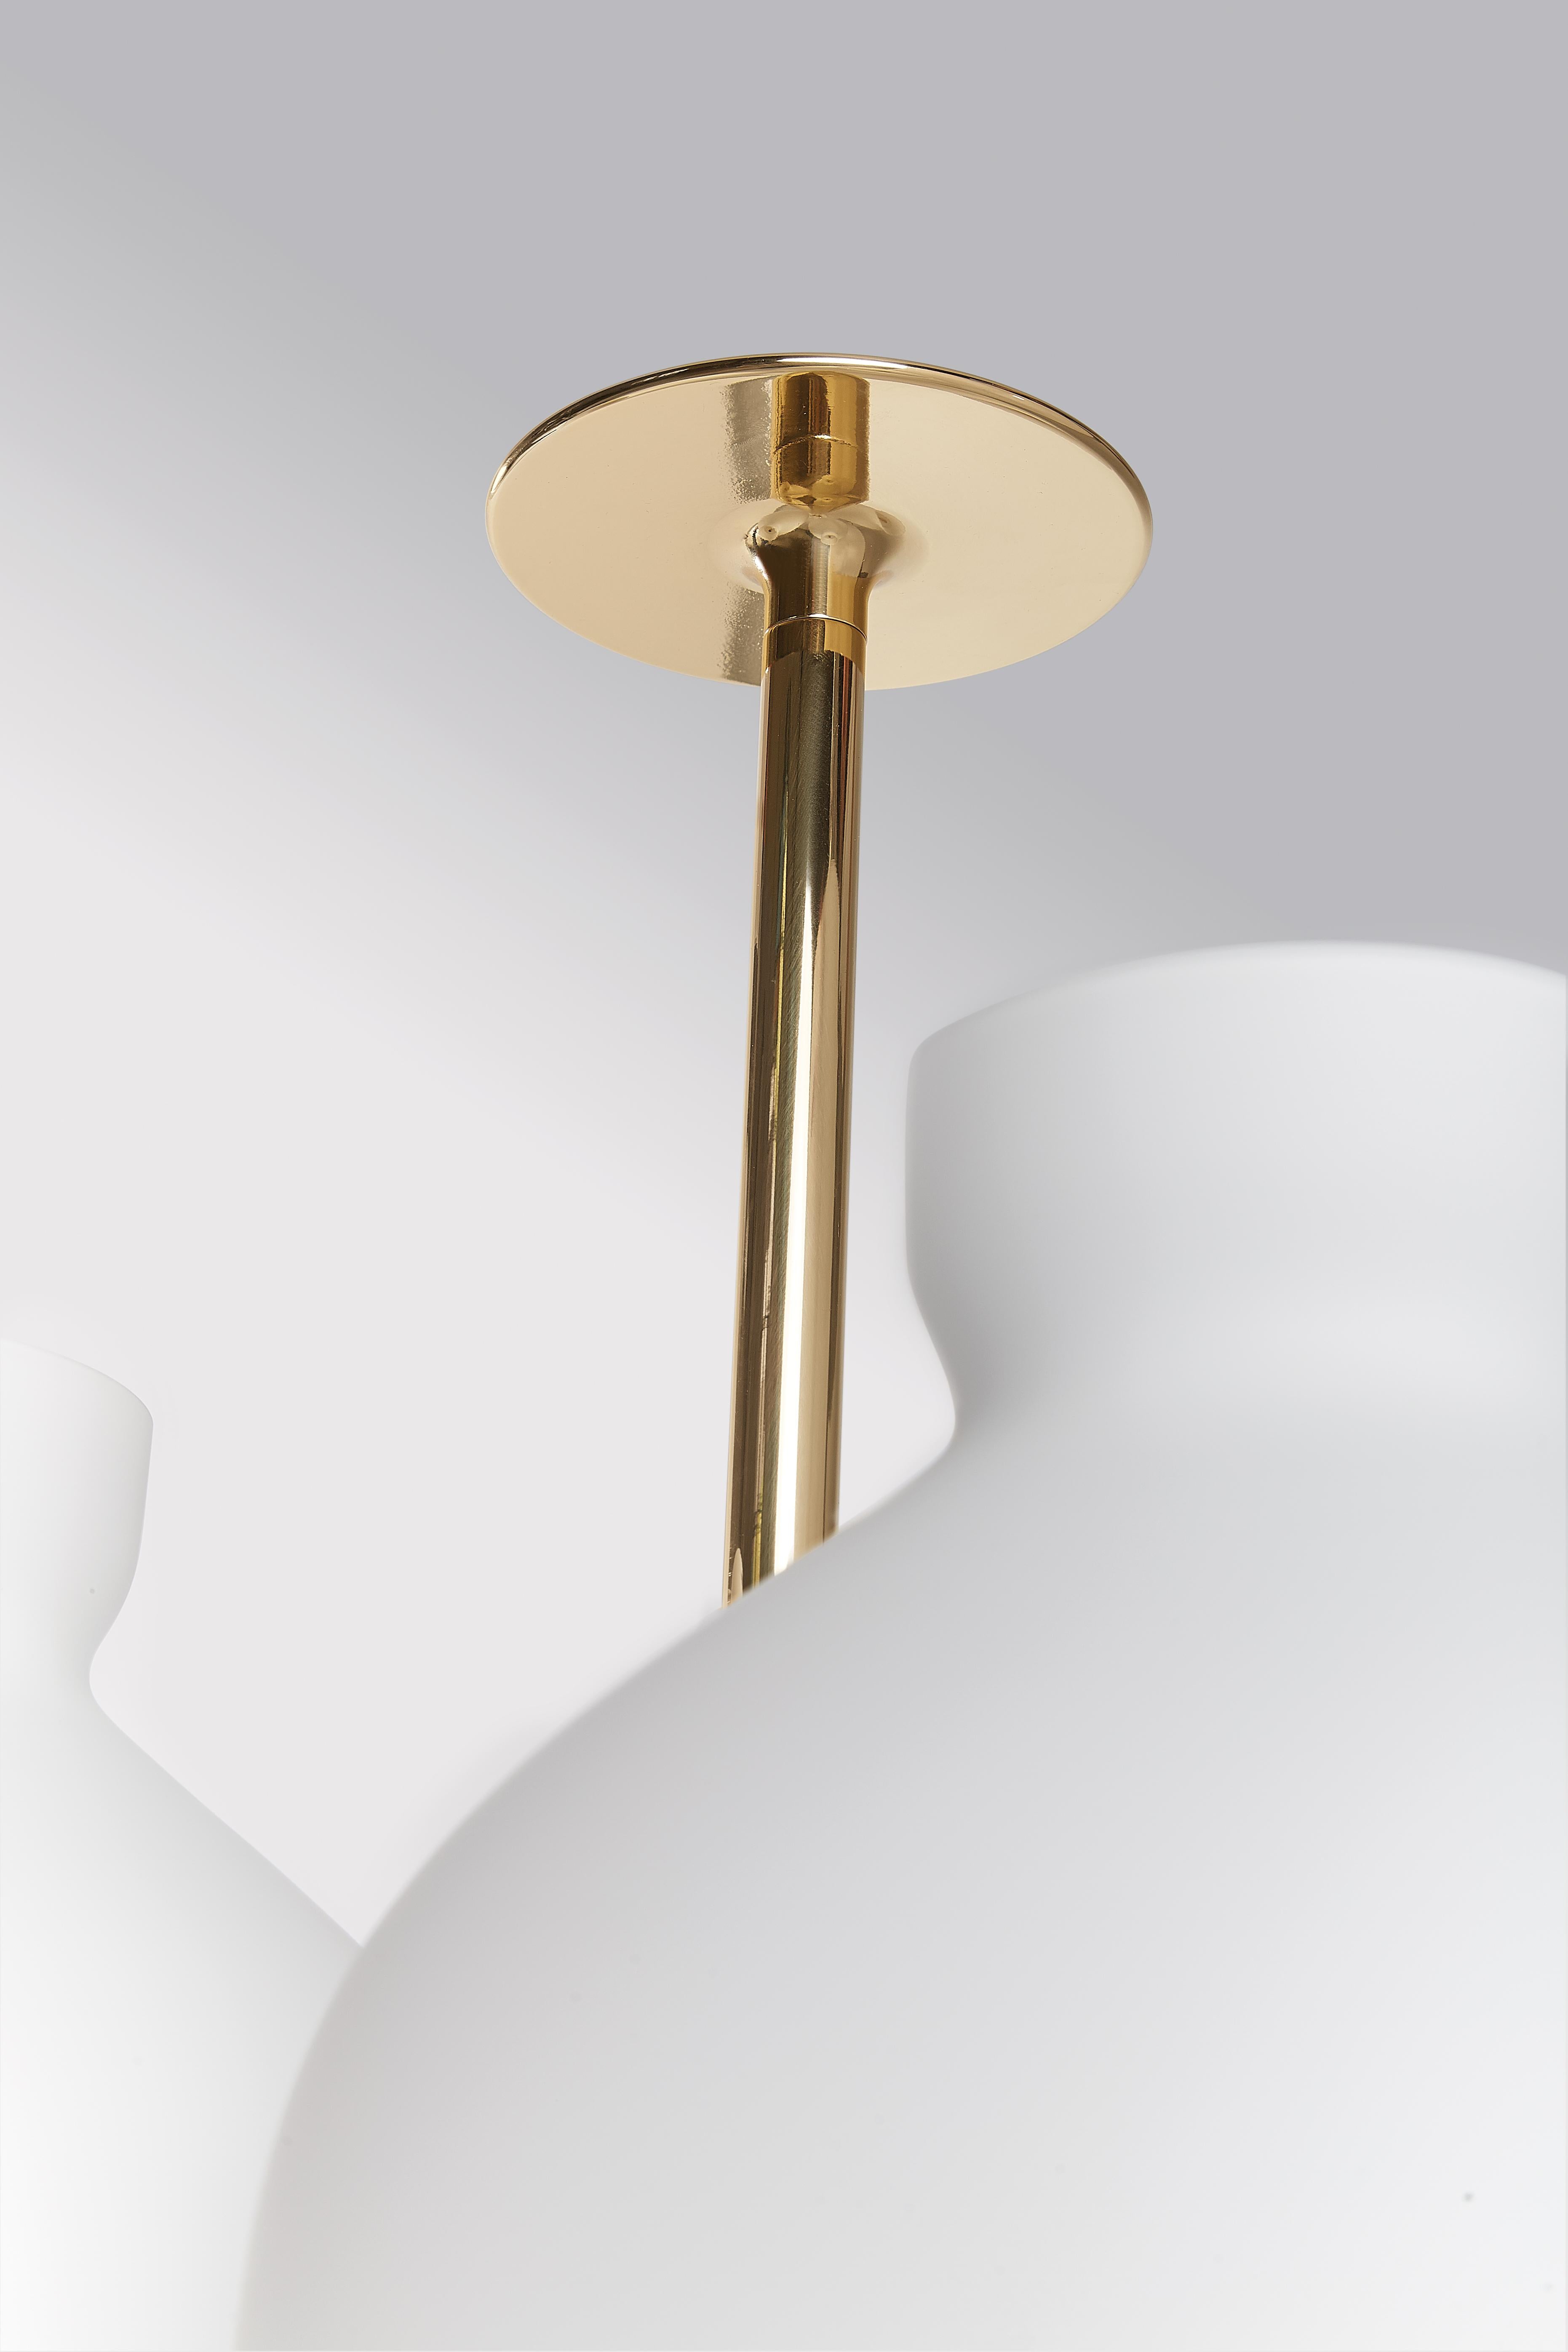 Italian Ignazio Gardella 'Arenzano Tre Fiamme' Table Lamp in White Marble and Brass For Sale